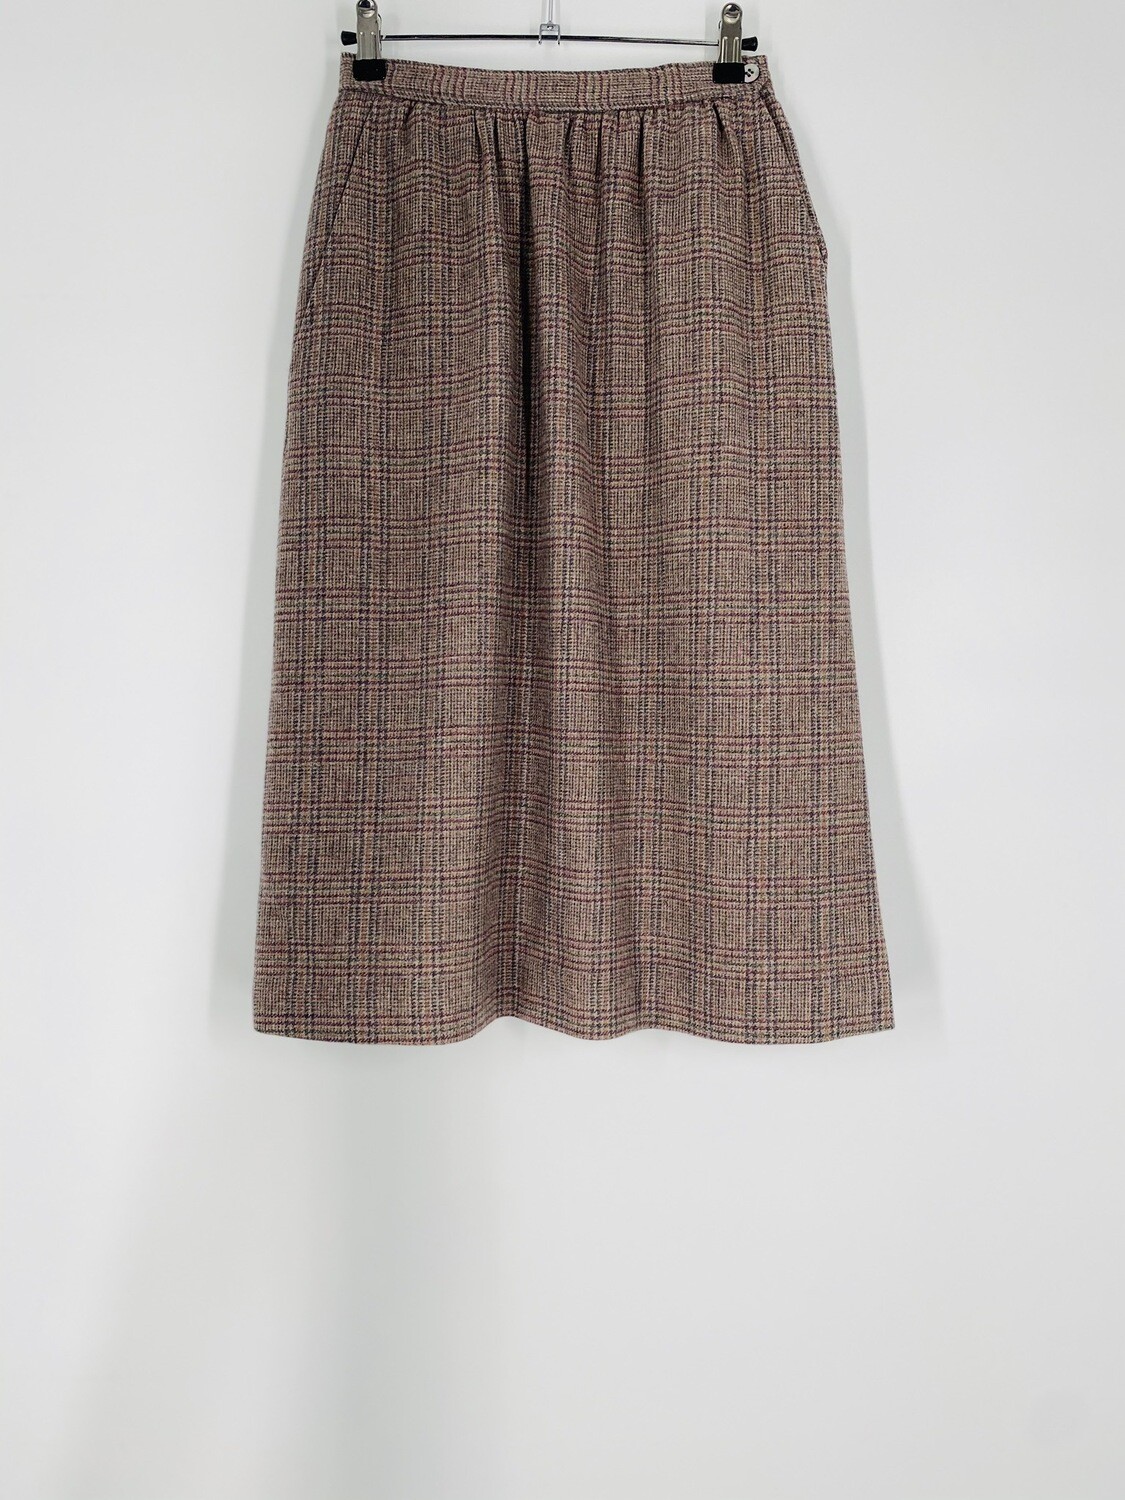 Evan Picone Plaid Wool Skirt Size S